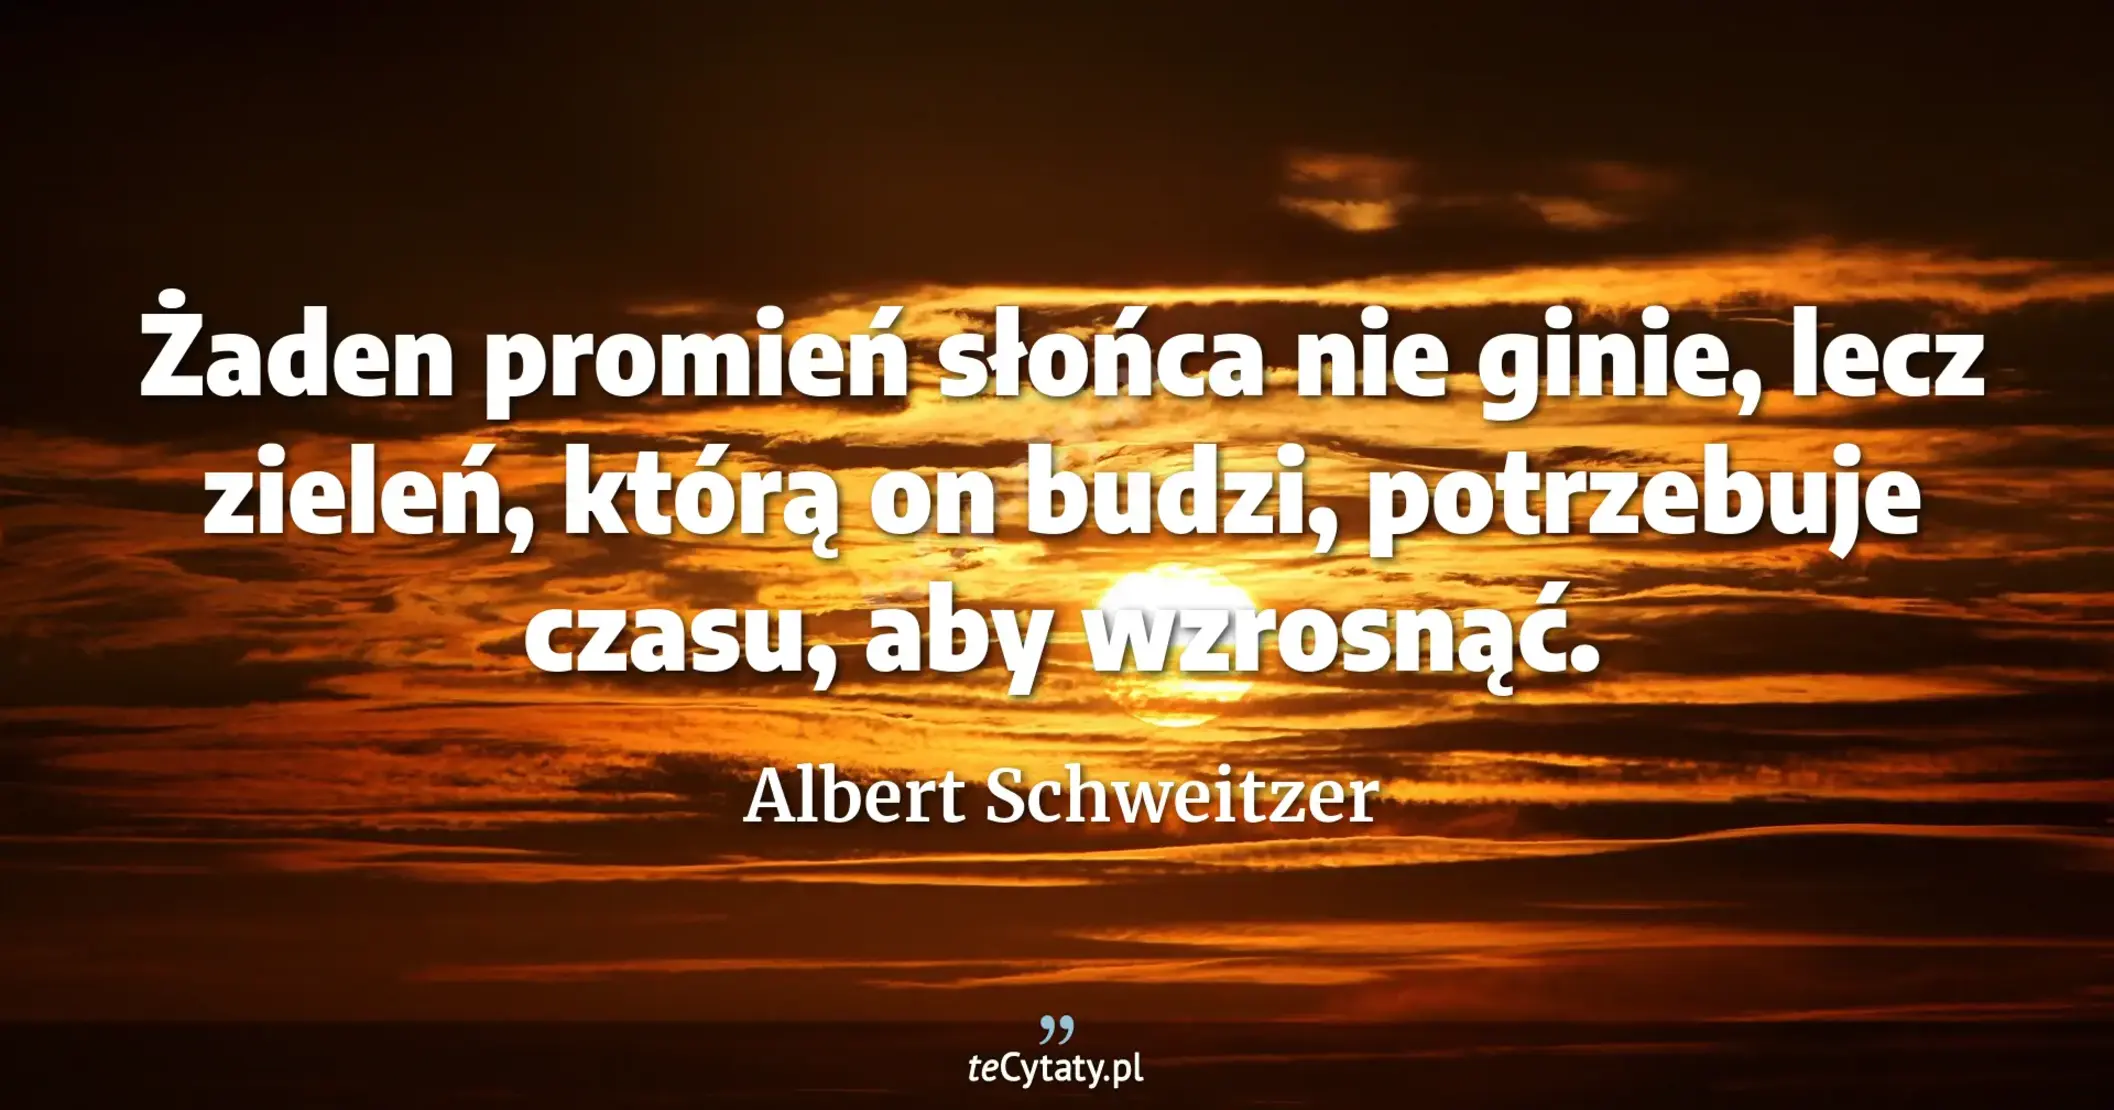 Żaden promień słońca nie ginie, lecz zieleń, którą on budzi, potrzebuje czasu, aby wzrosnąć. - Albert Schweitzer